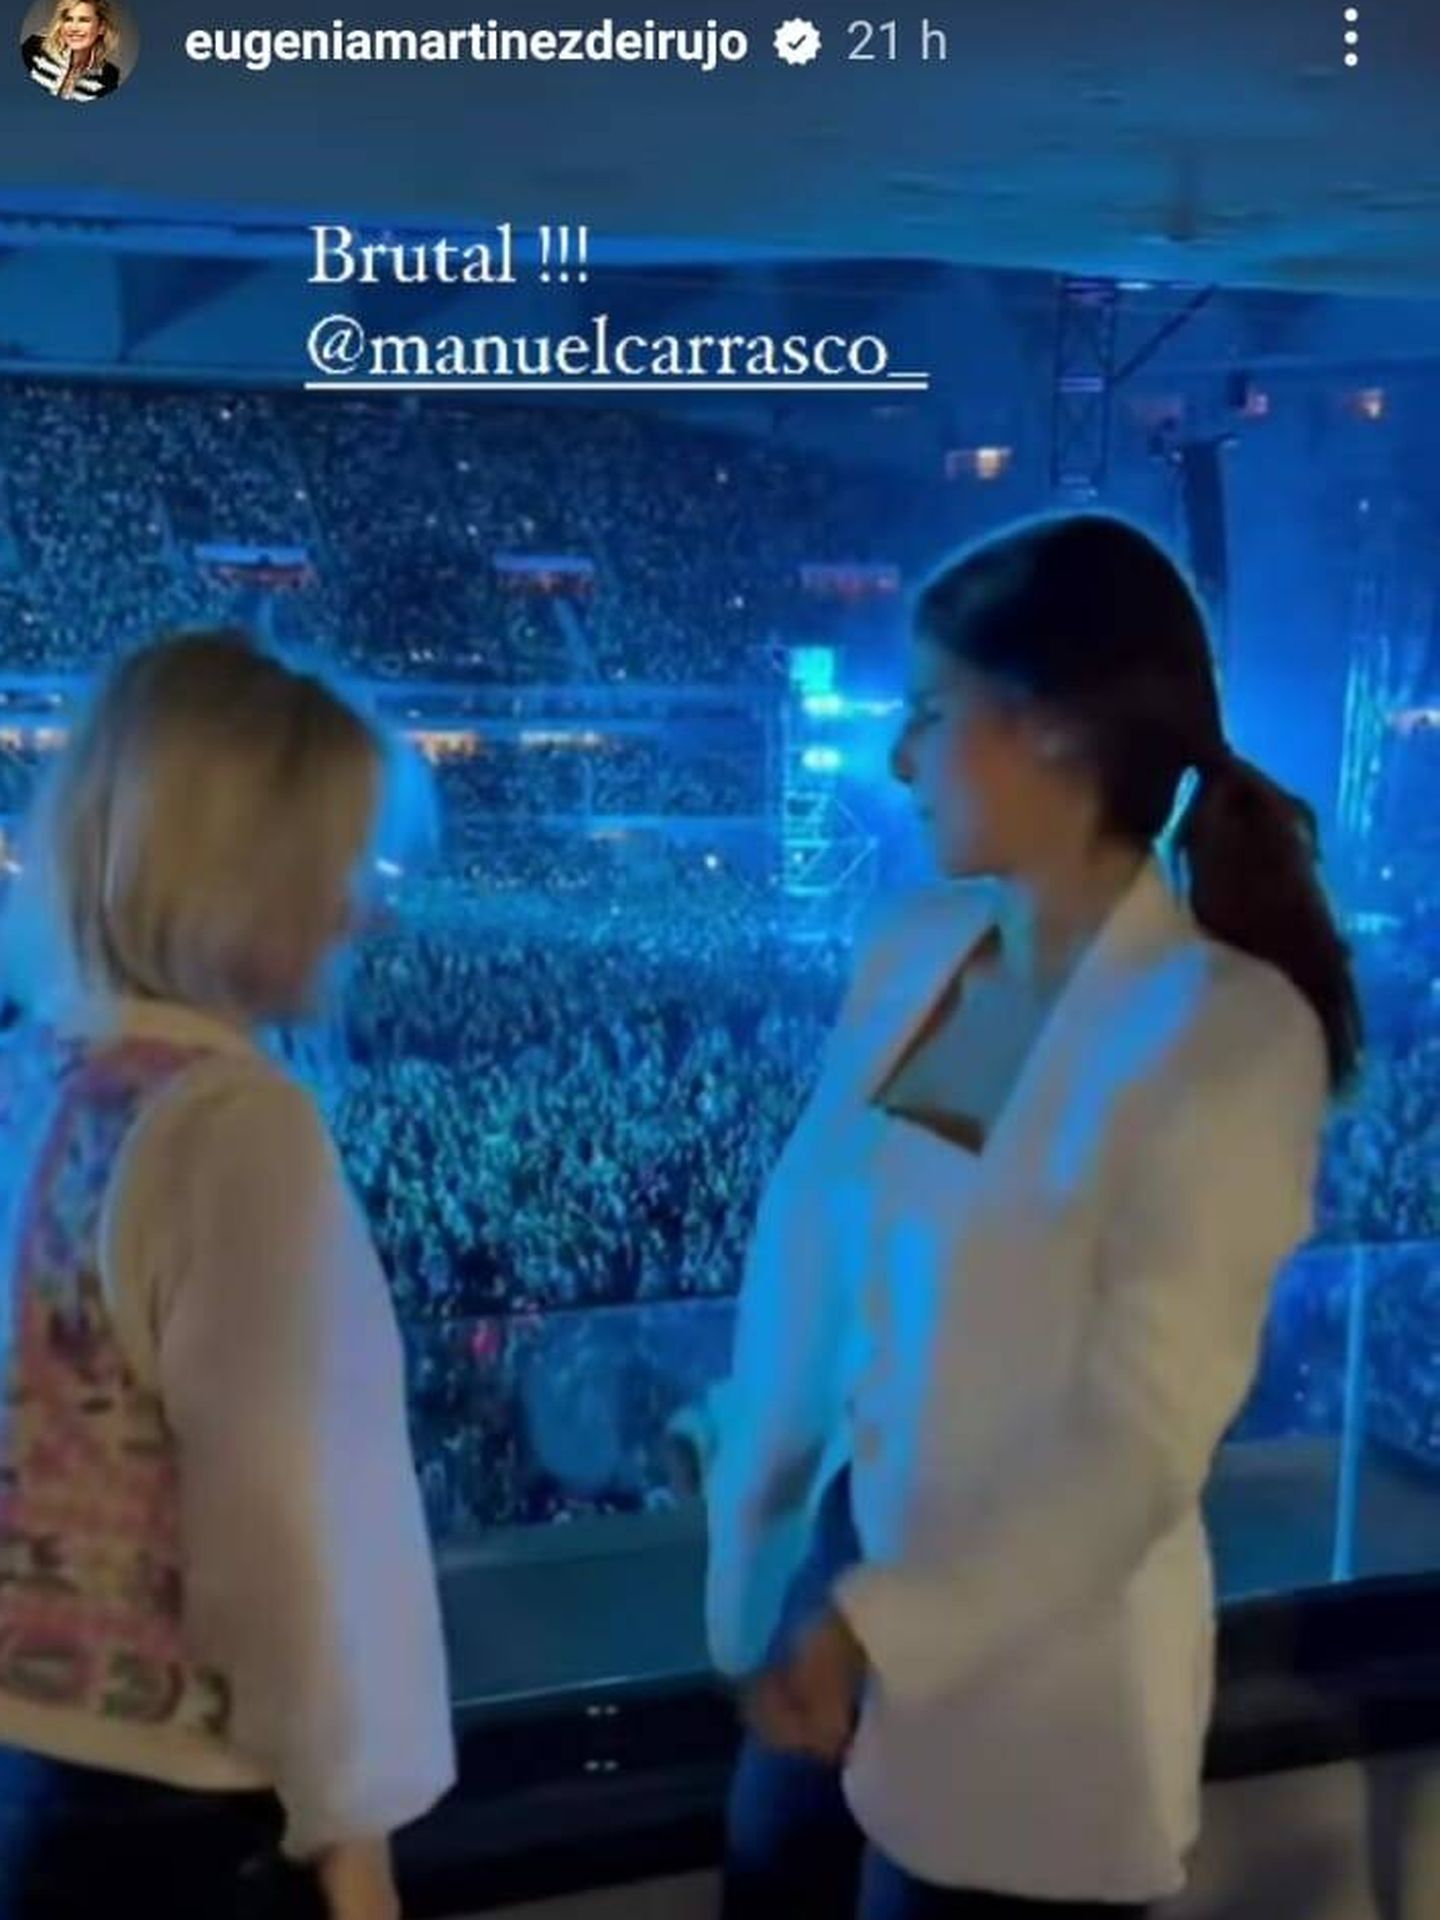 Tana Rivera, junto a su madre en un concierto de Manuel Carrasco. (Instagram/@eugeniamartinezdeirujo)